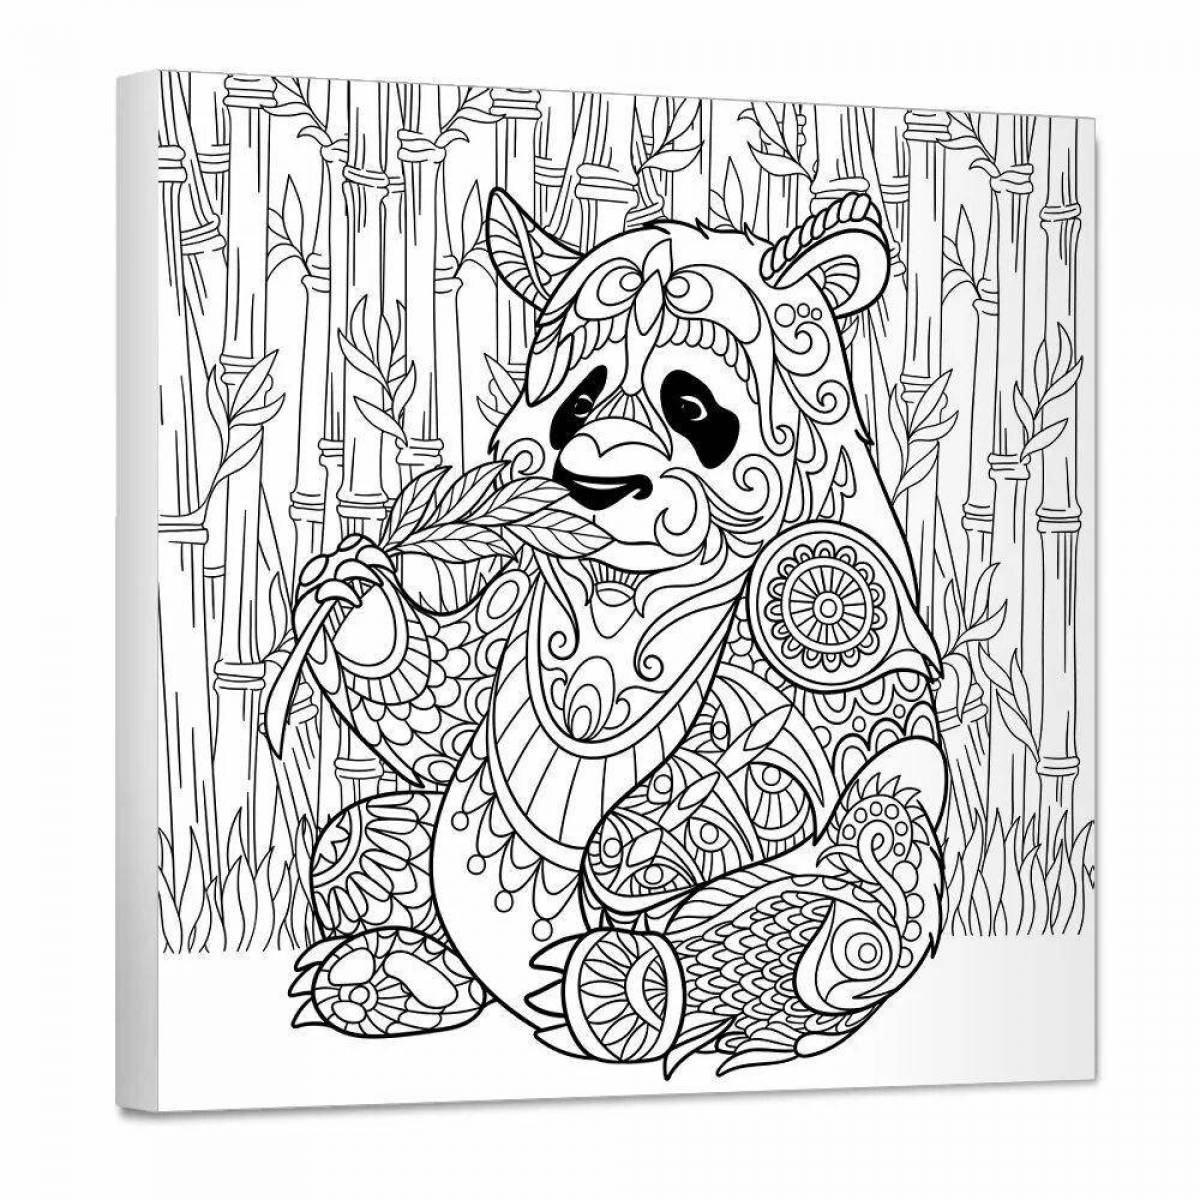 Playful antistress panda coloring book